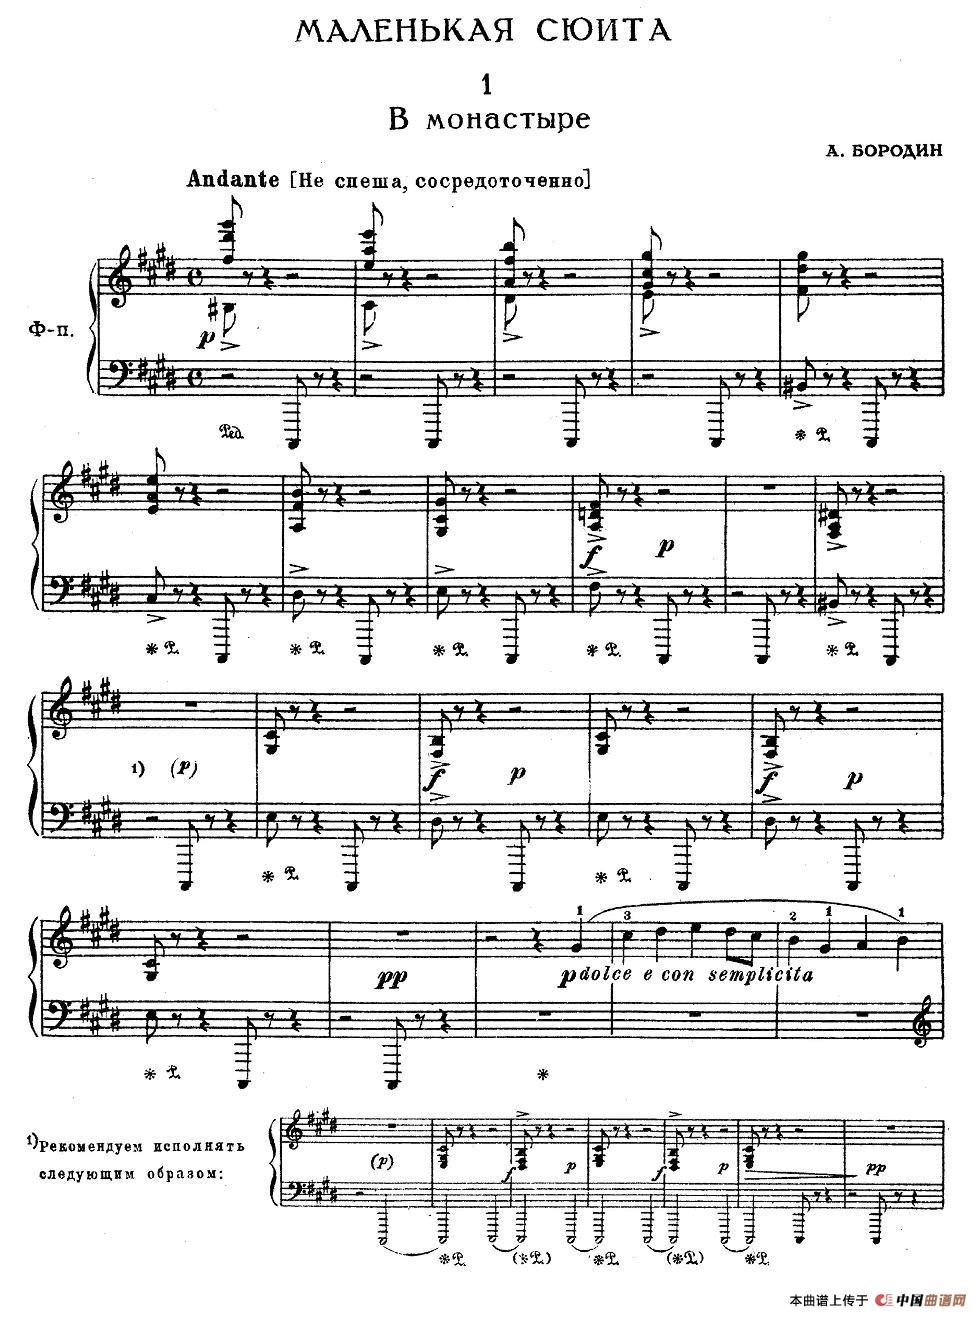 《亚历山大·鲍罗丁—小组曲》钢琴曲谱图分享